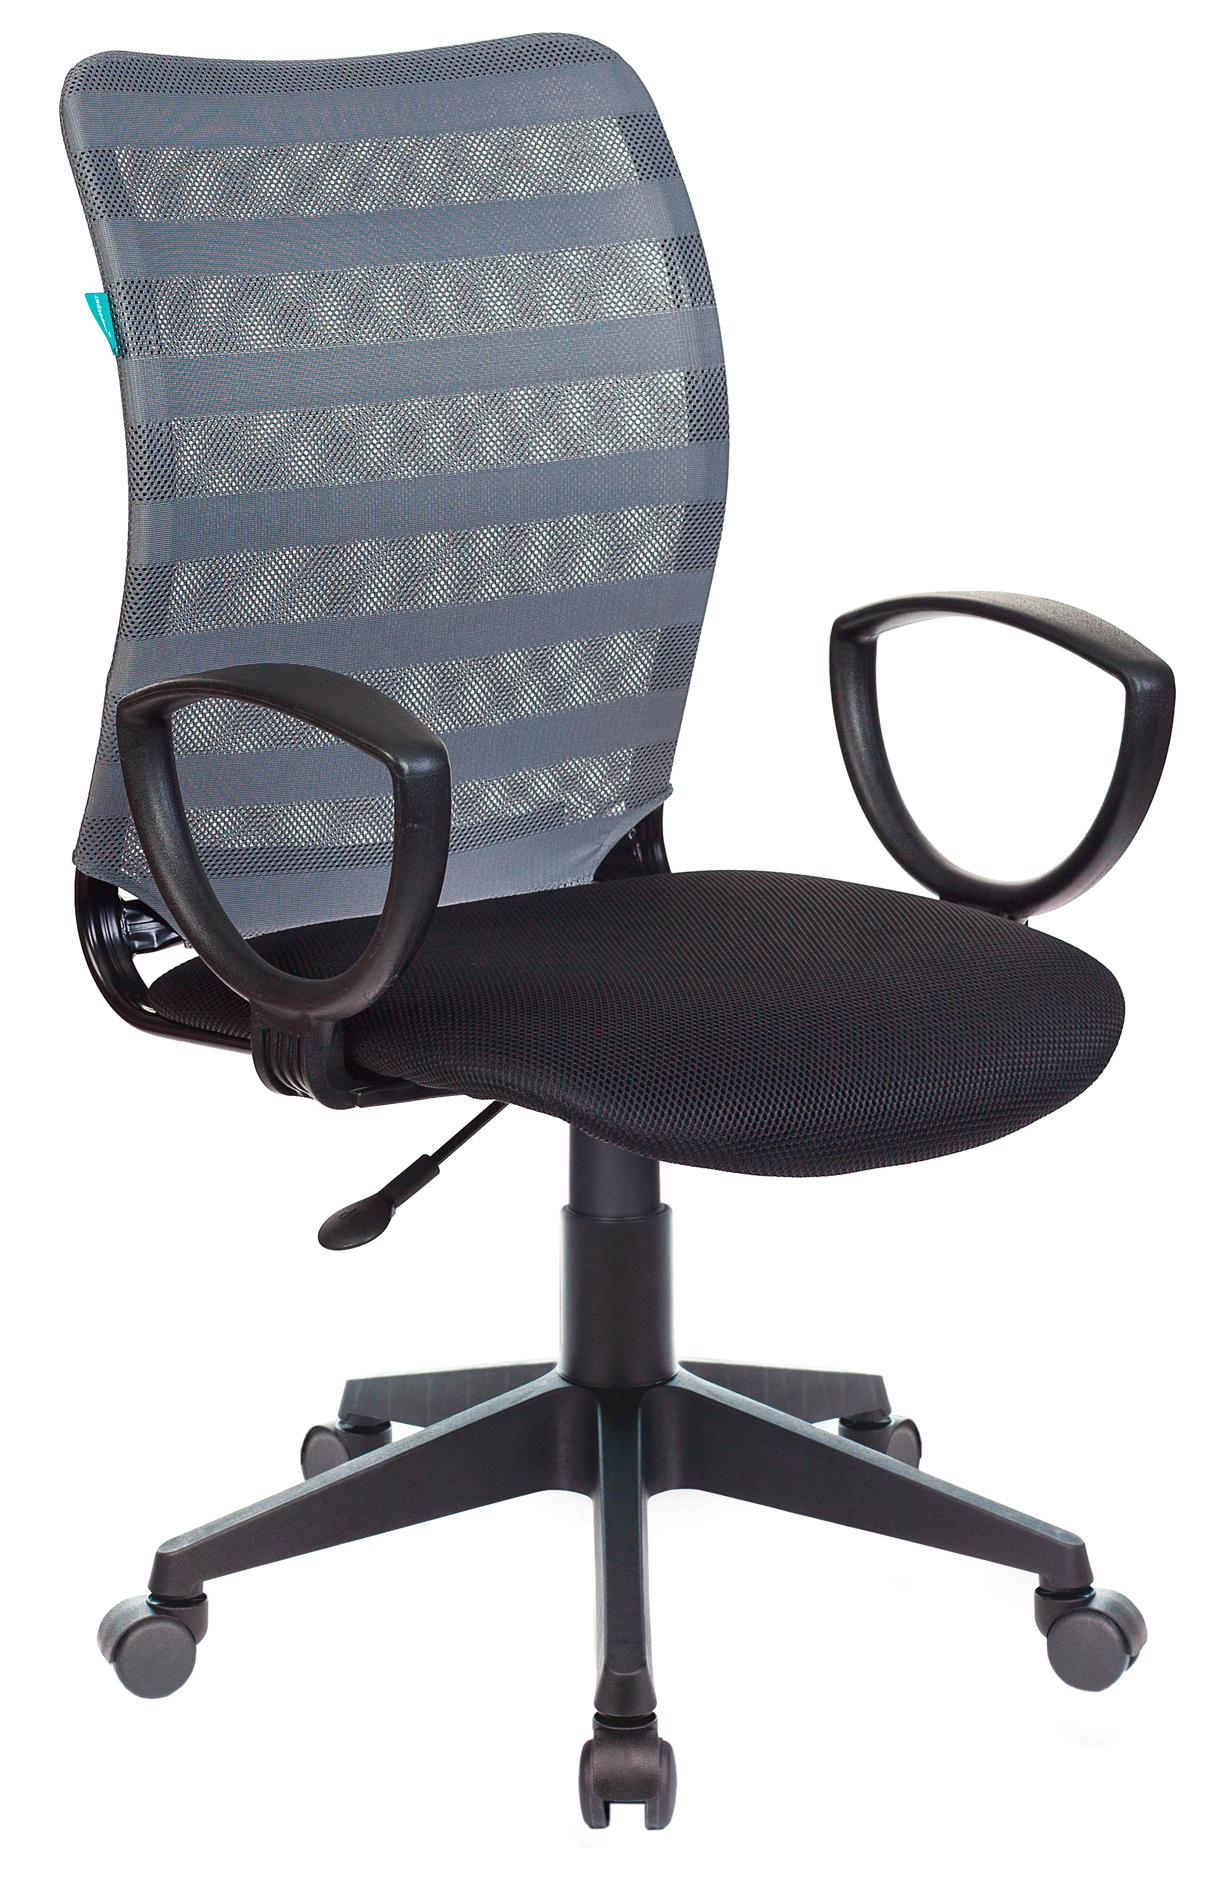 Кресло Бюрократ CH-599AXSN серый TW-32K03 сиденье черный TW-11 сетка/ткань крестовина пластик